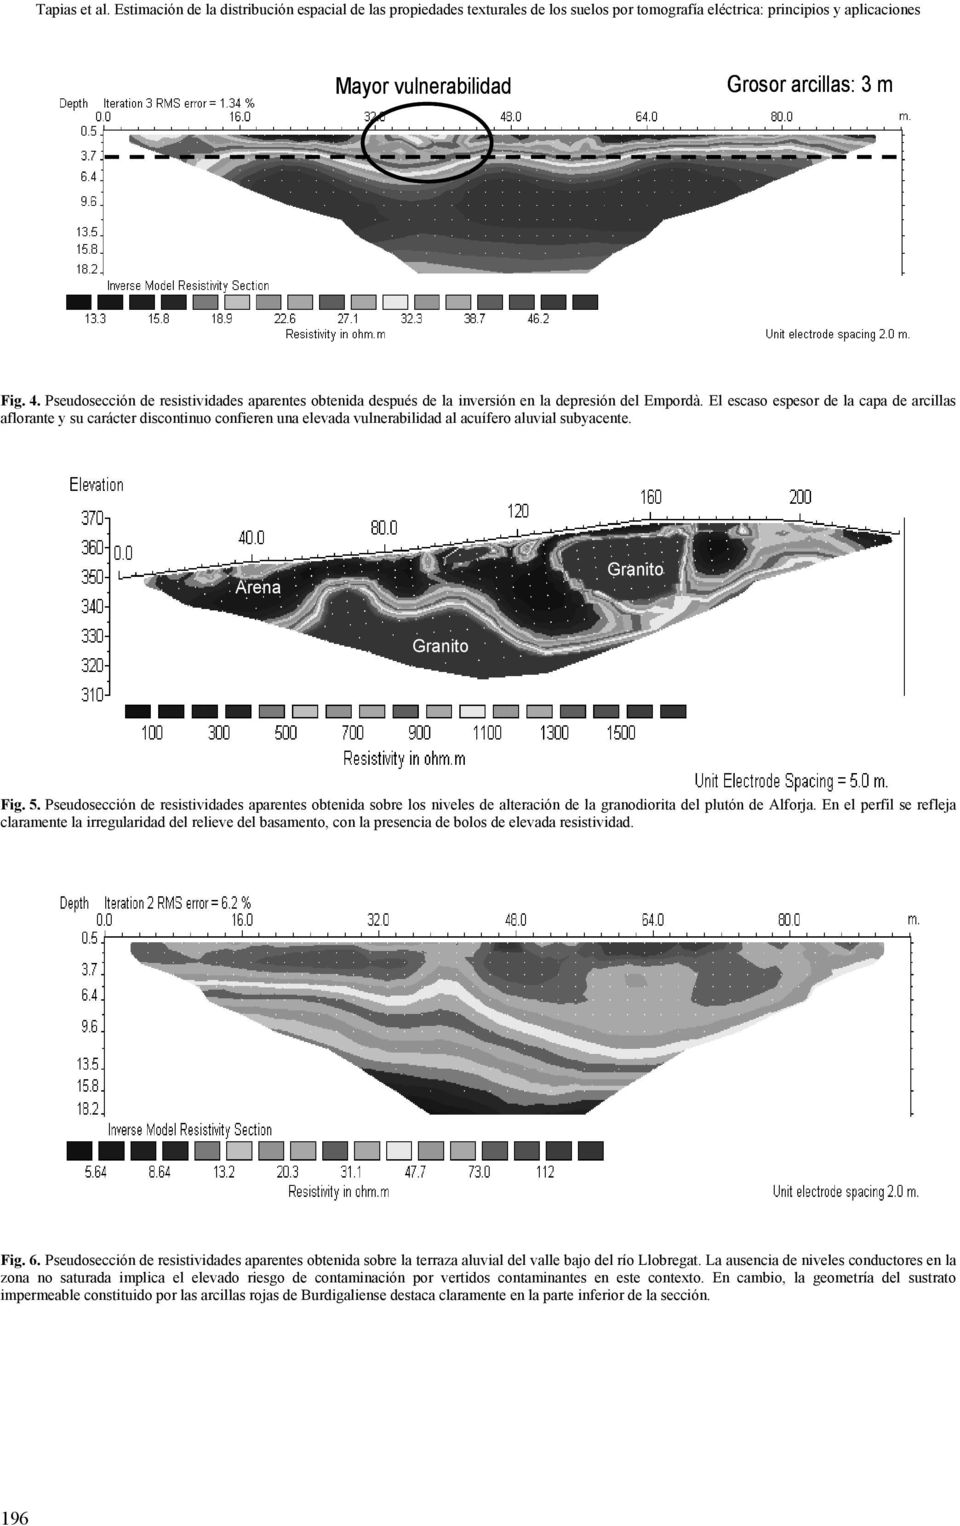 Pseudosección de resistividades aparentes obtenida sobre los niveles de alteración de la granodiorita del plutón de Alforja.